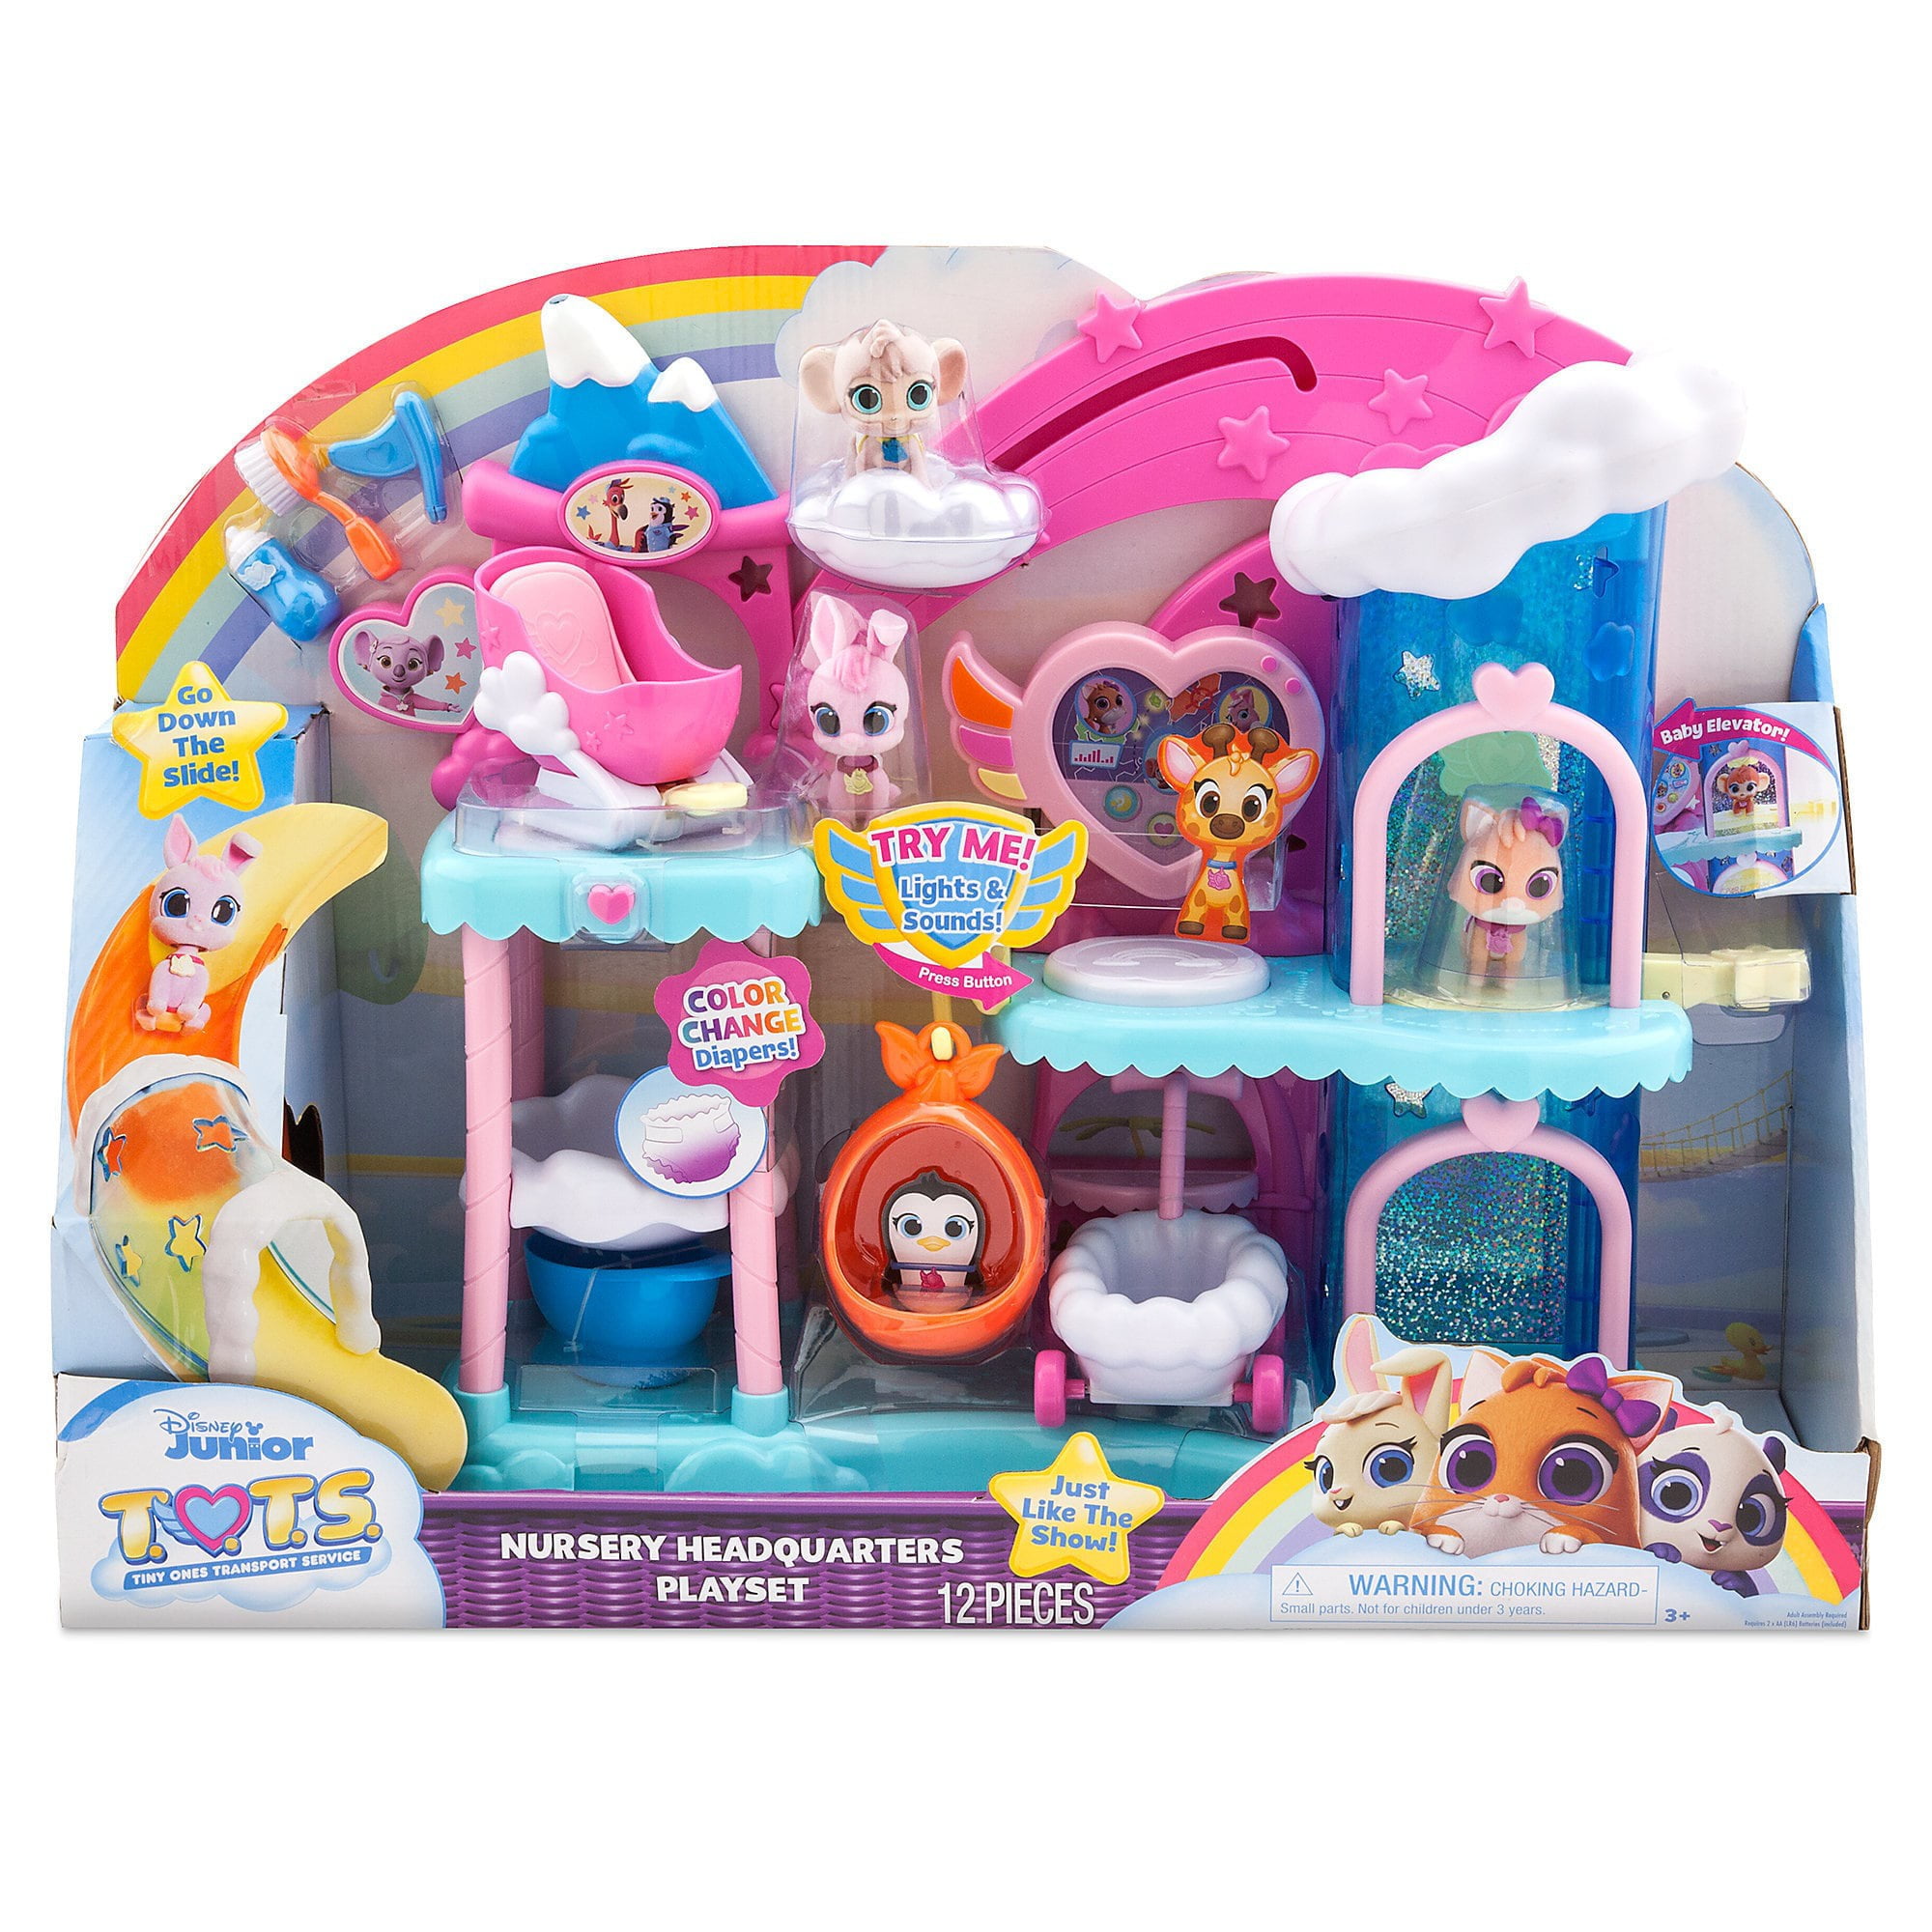 Nursery Headquarters Playset & Bonus Figures toys Disney Jr T.O.T.S 